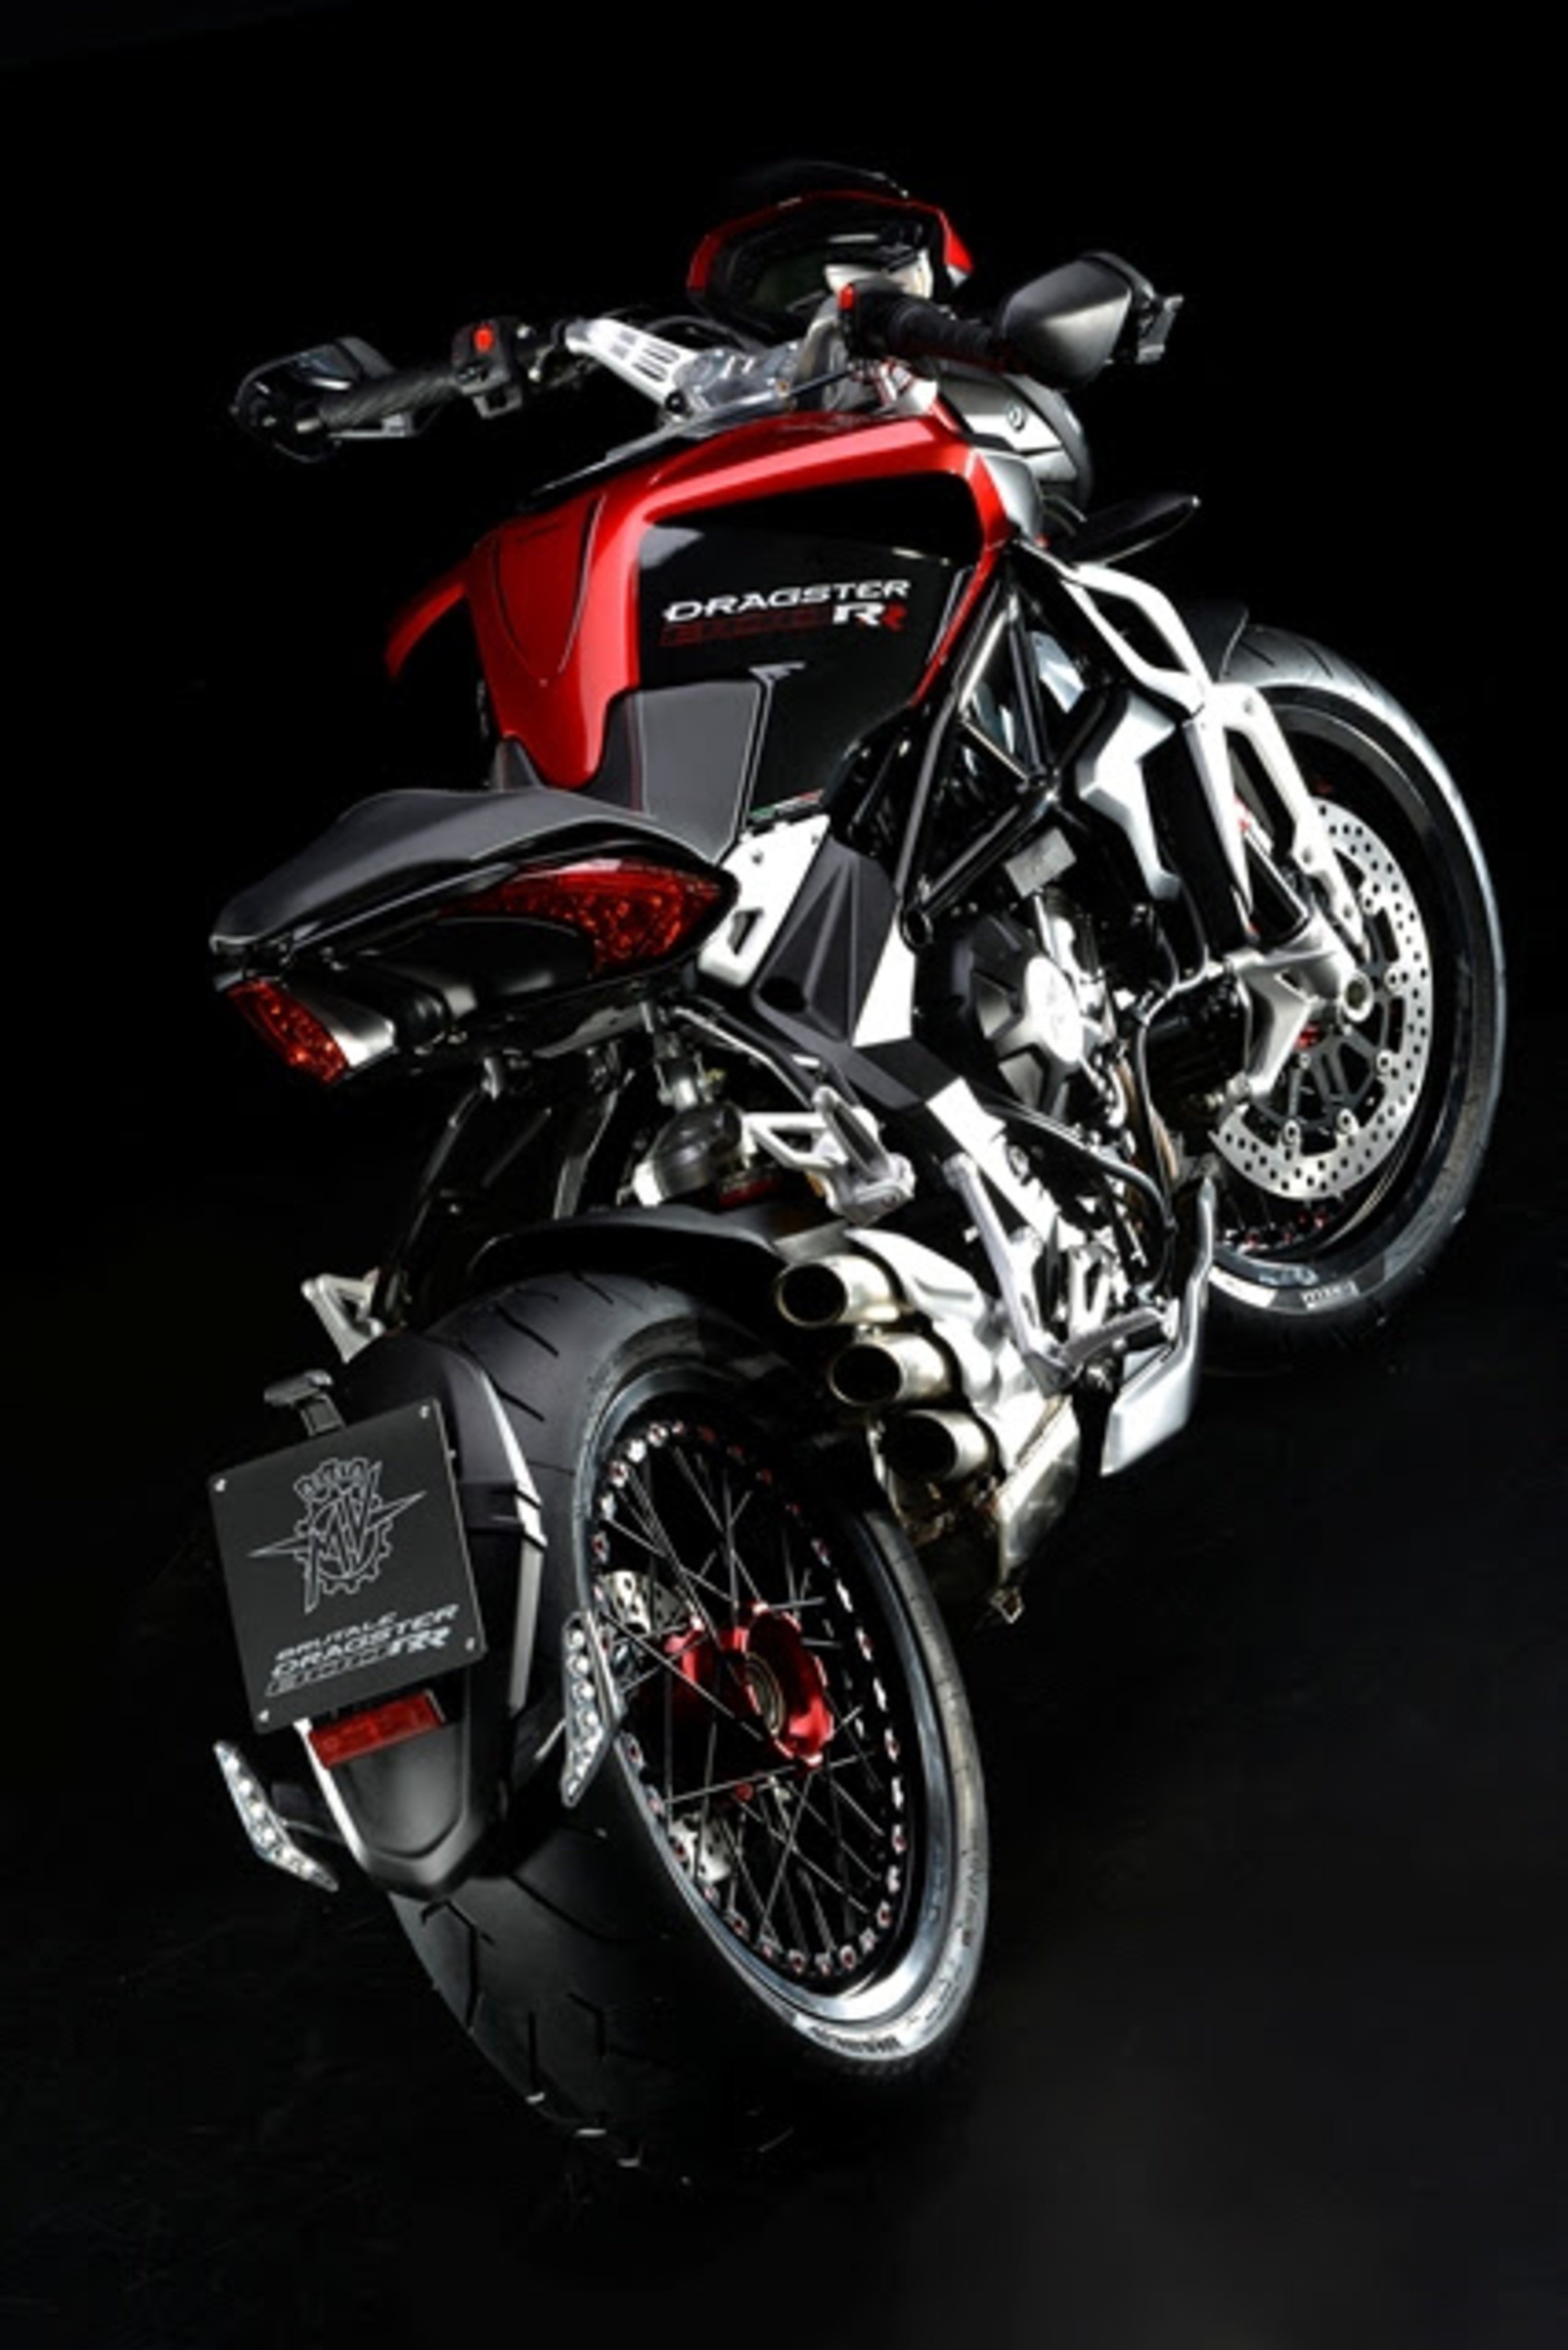 Pirelli Diablo Rosso II scelto da MV Agusta per le nuove Brutale